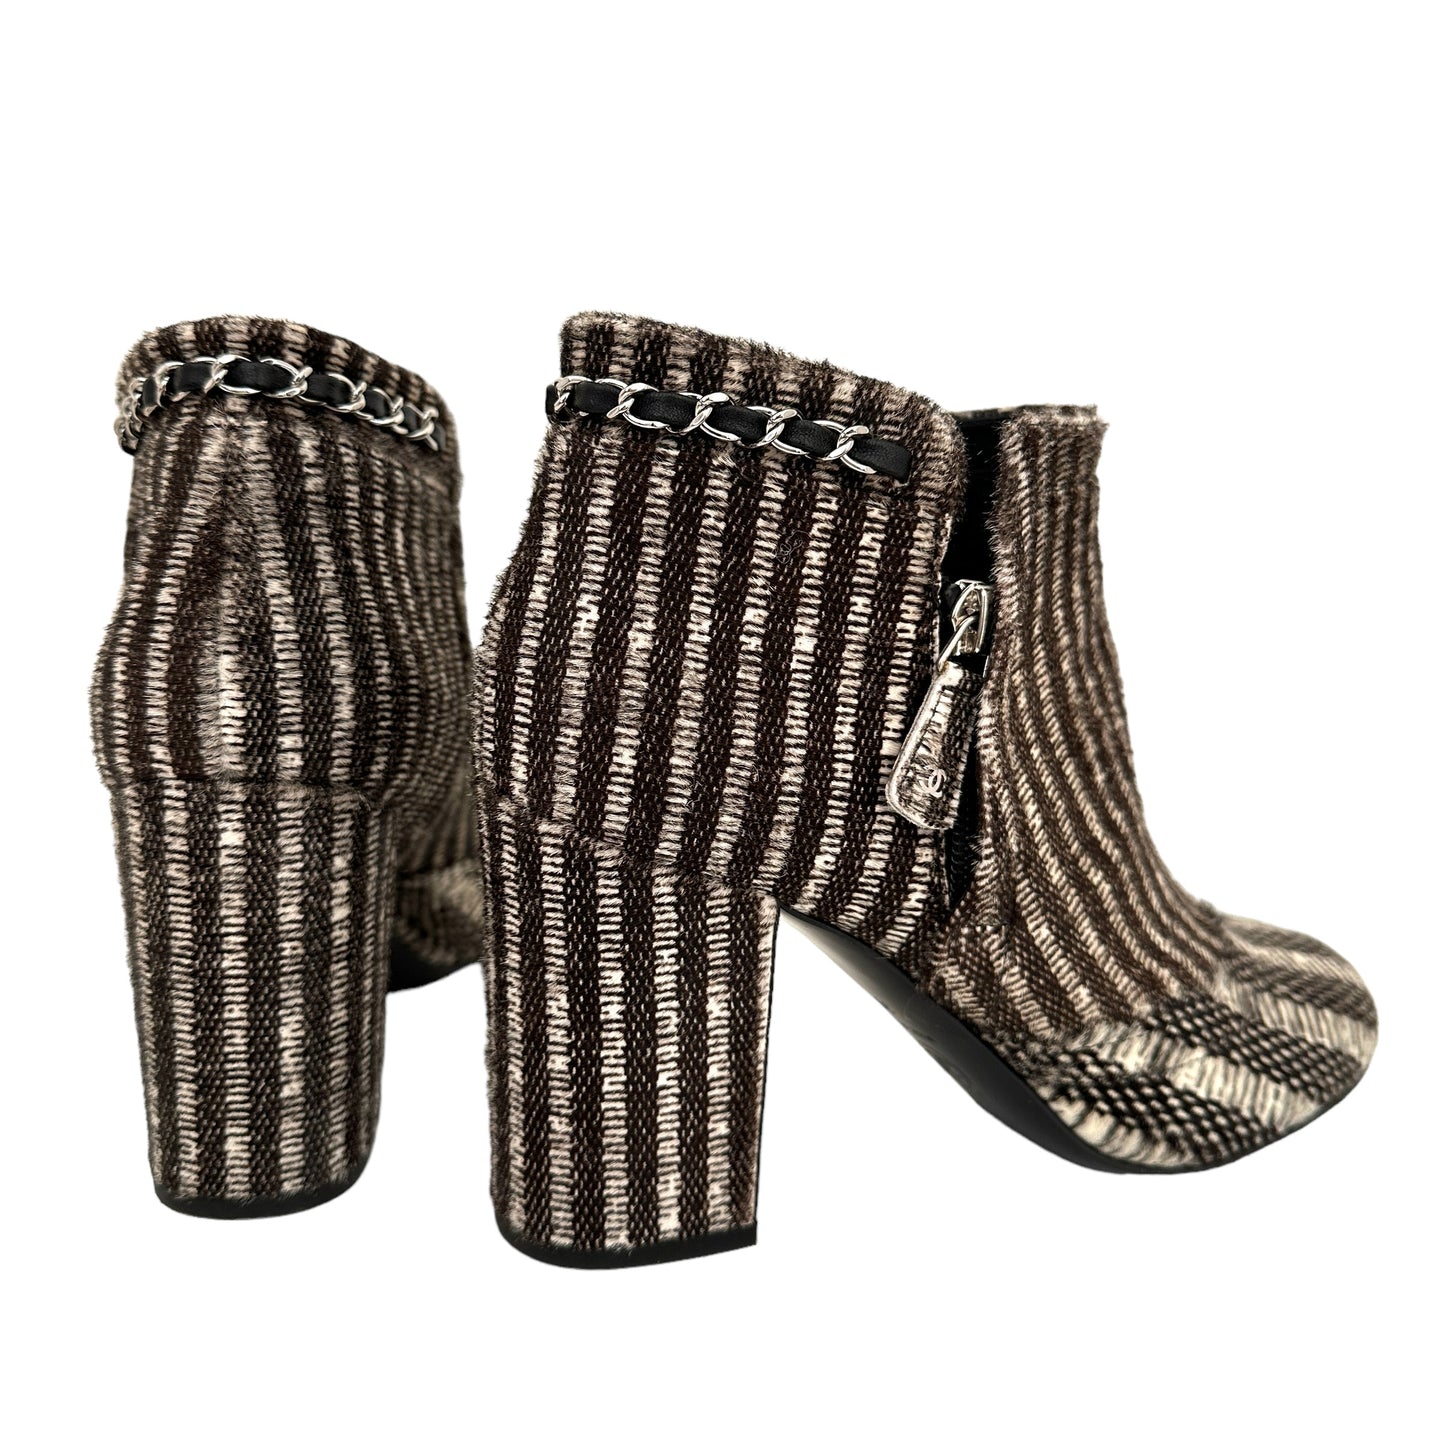 Tweed Heeled Boots - 9